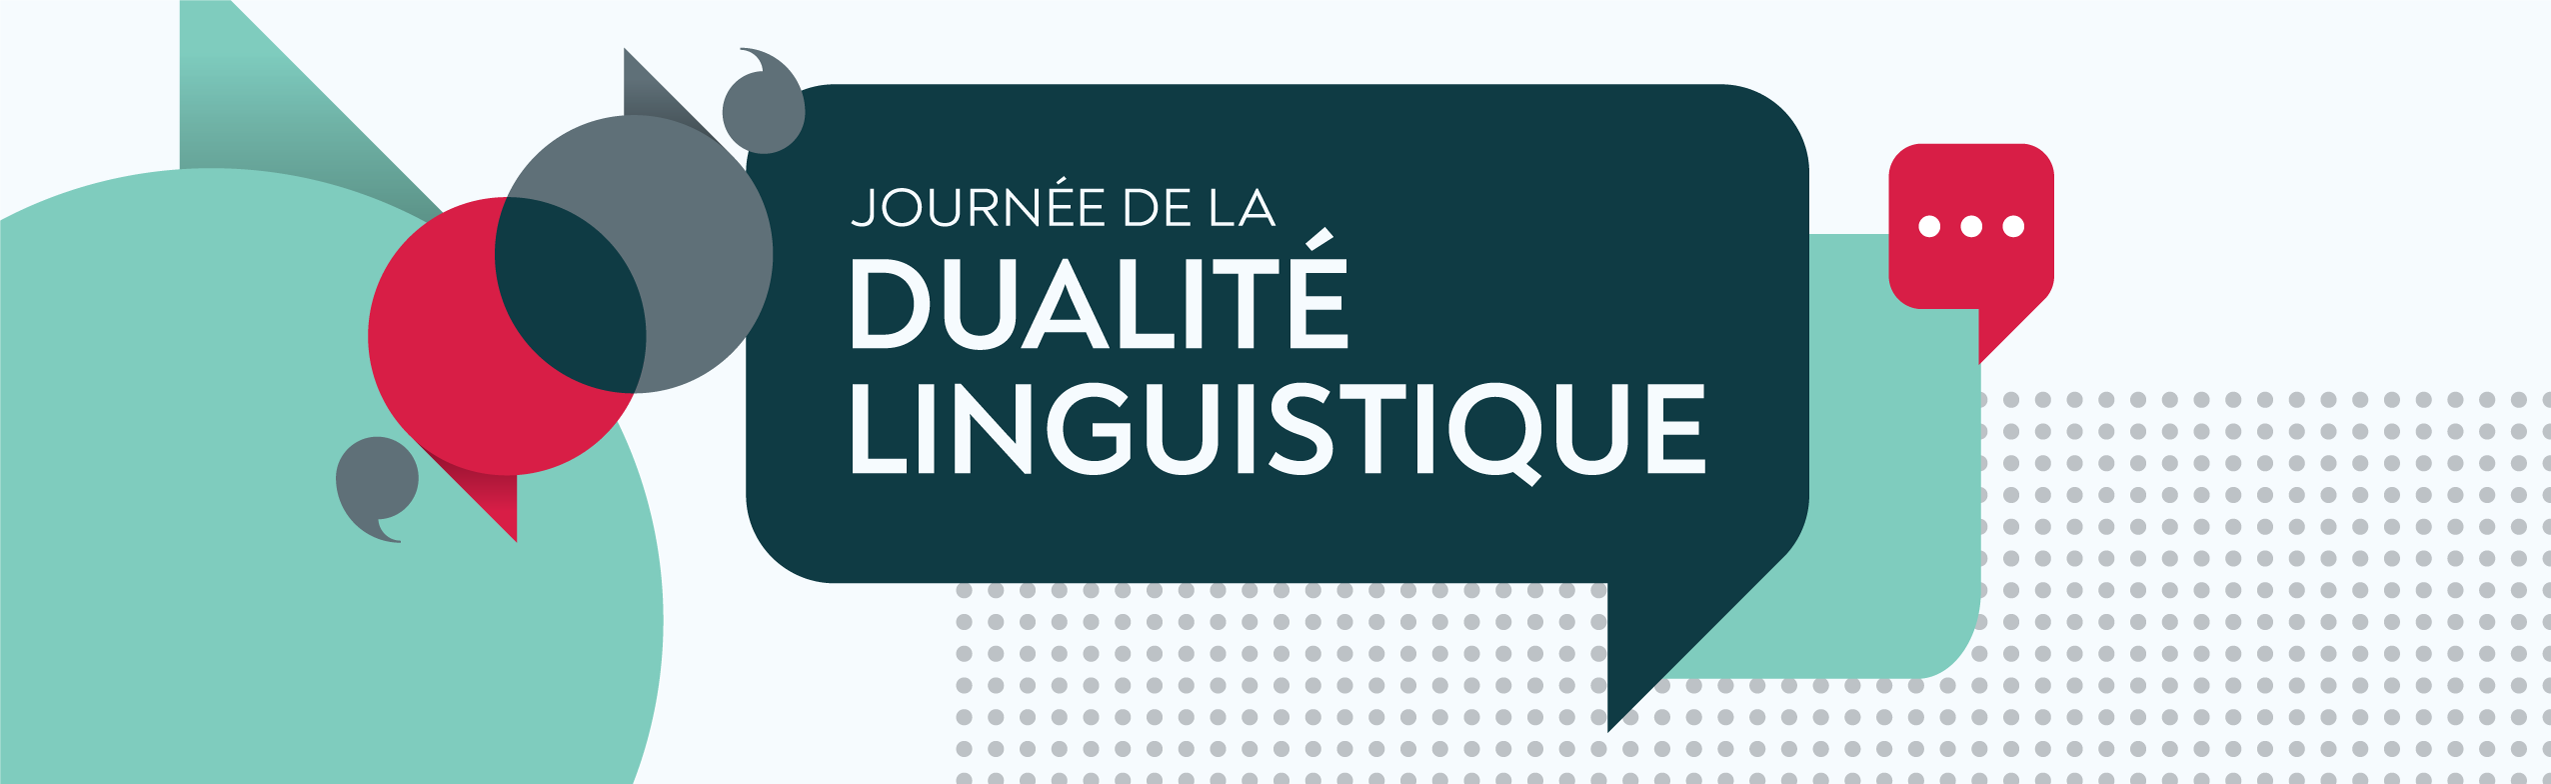 Bannière Journée de la dualité linguistique